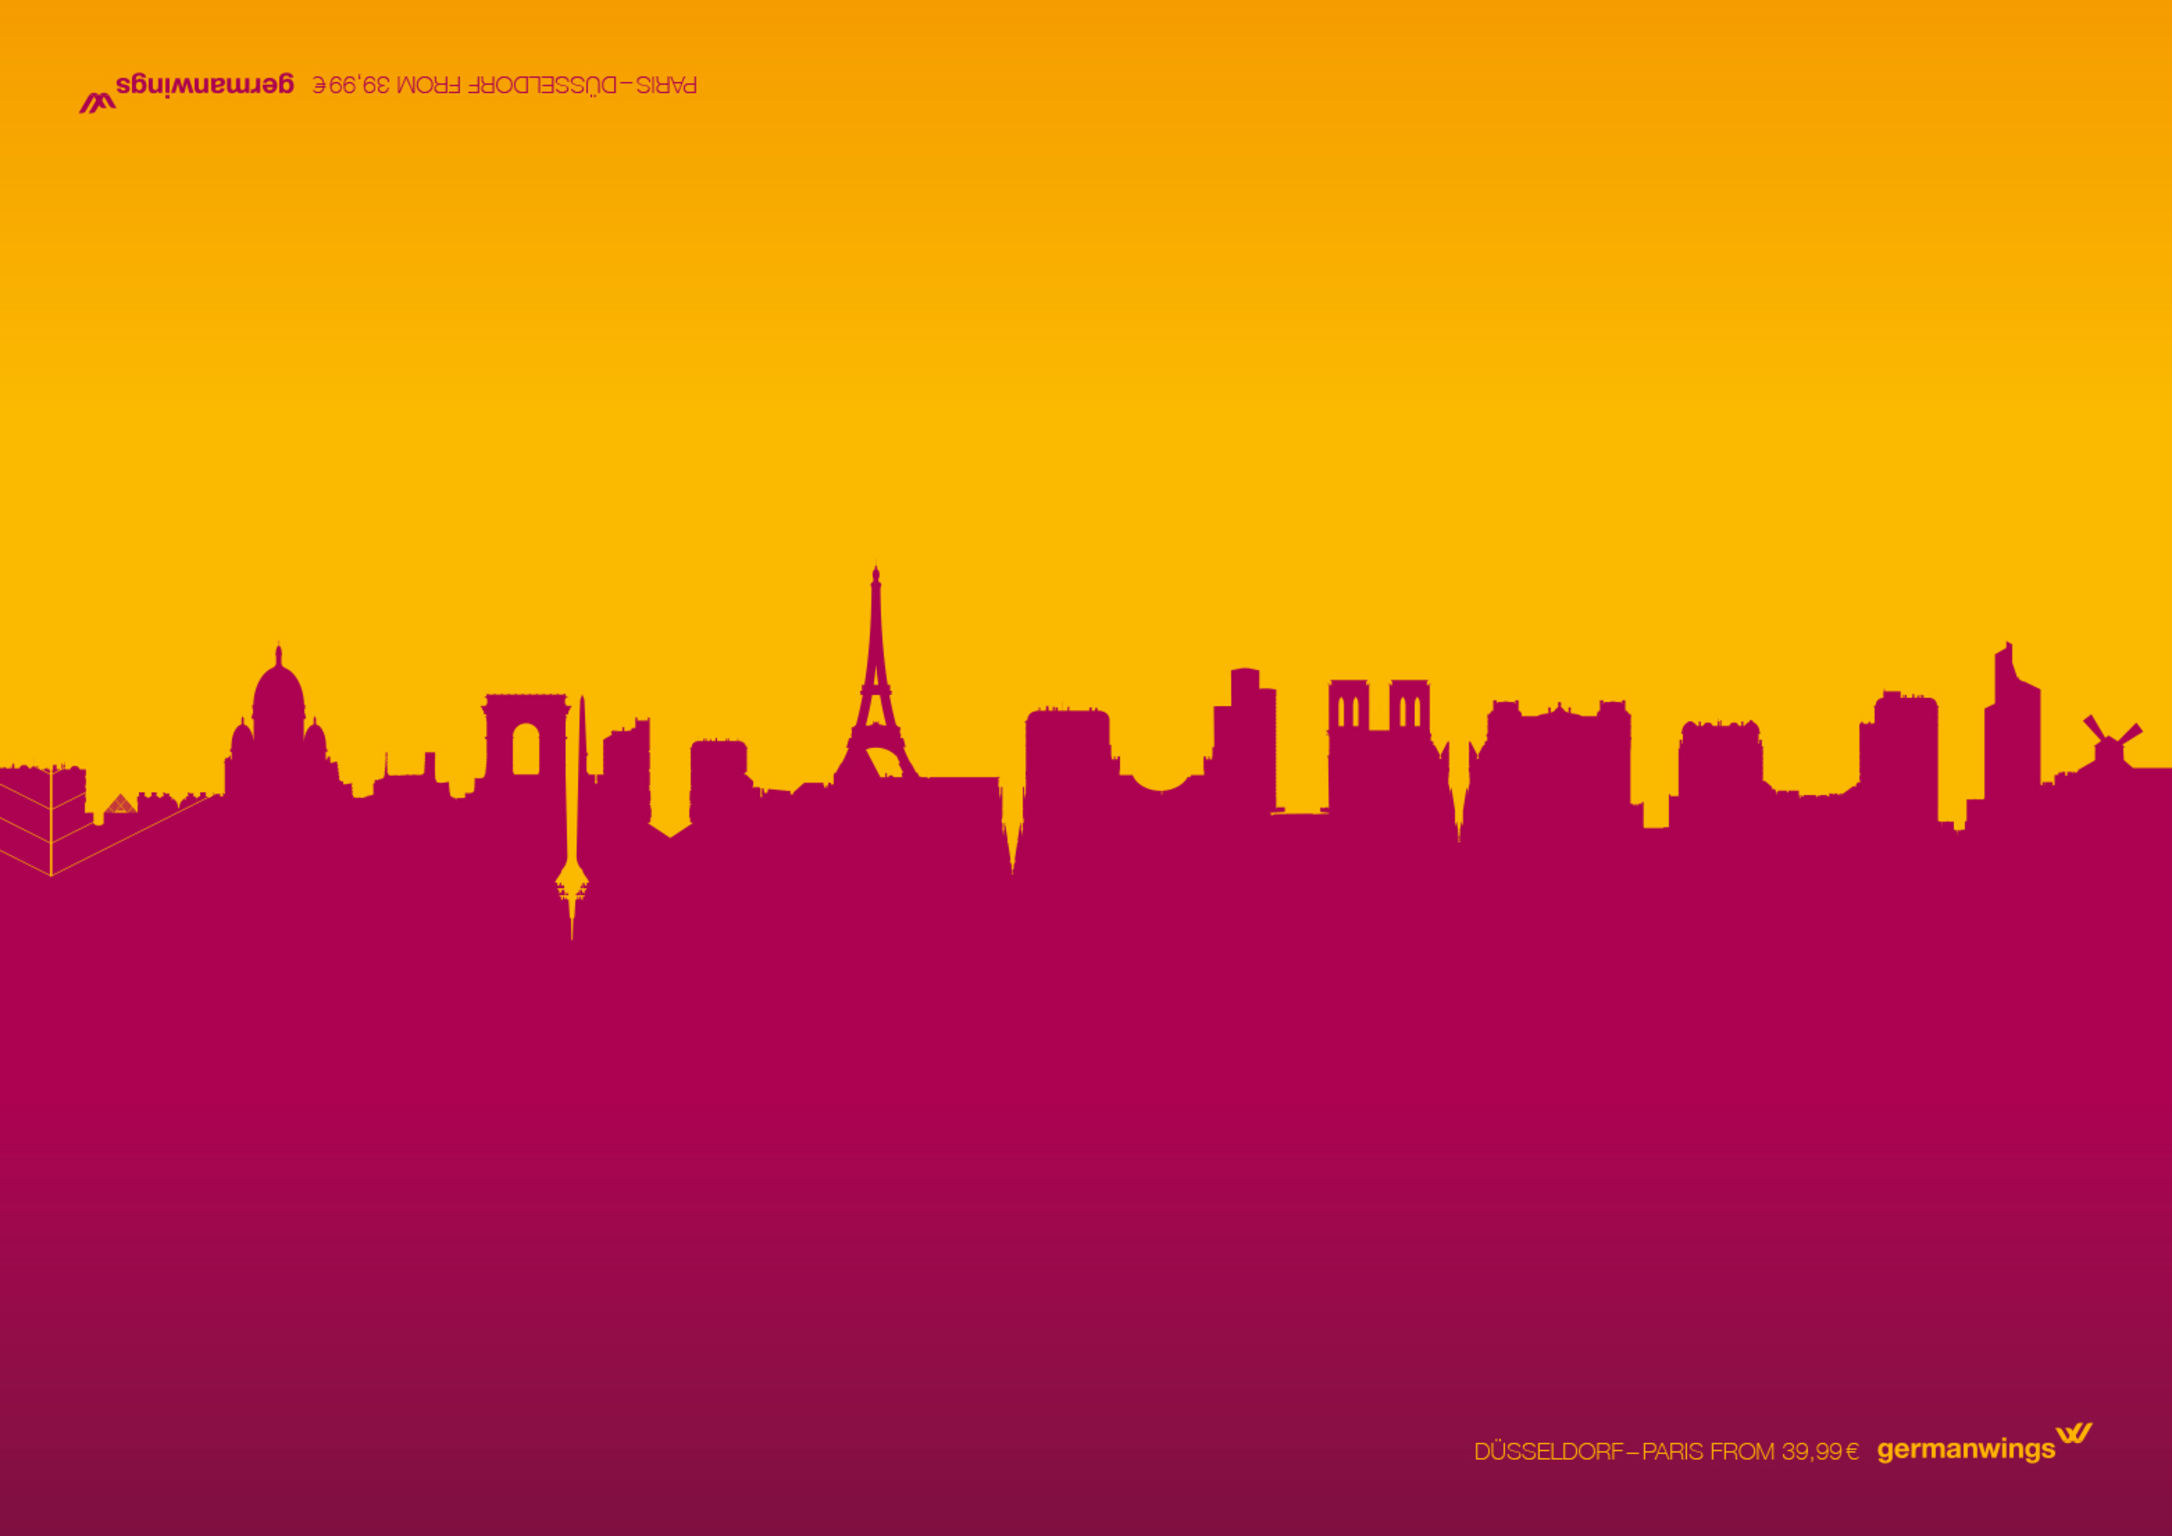 Germanwings Poster